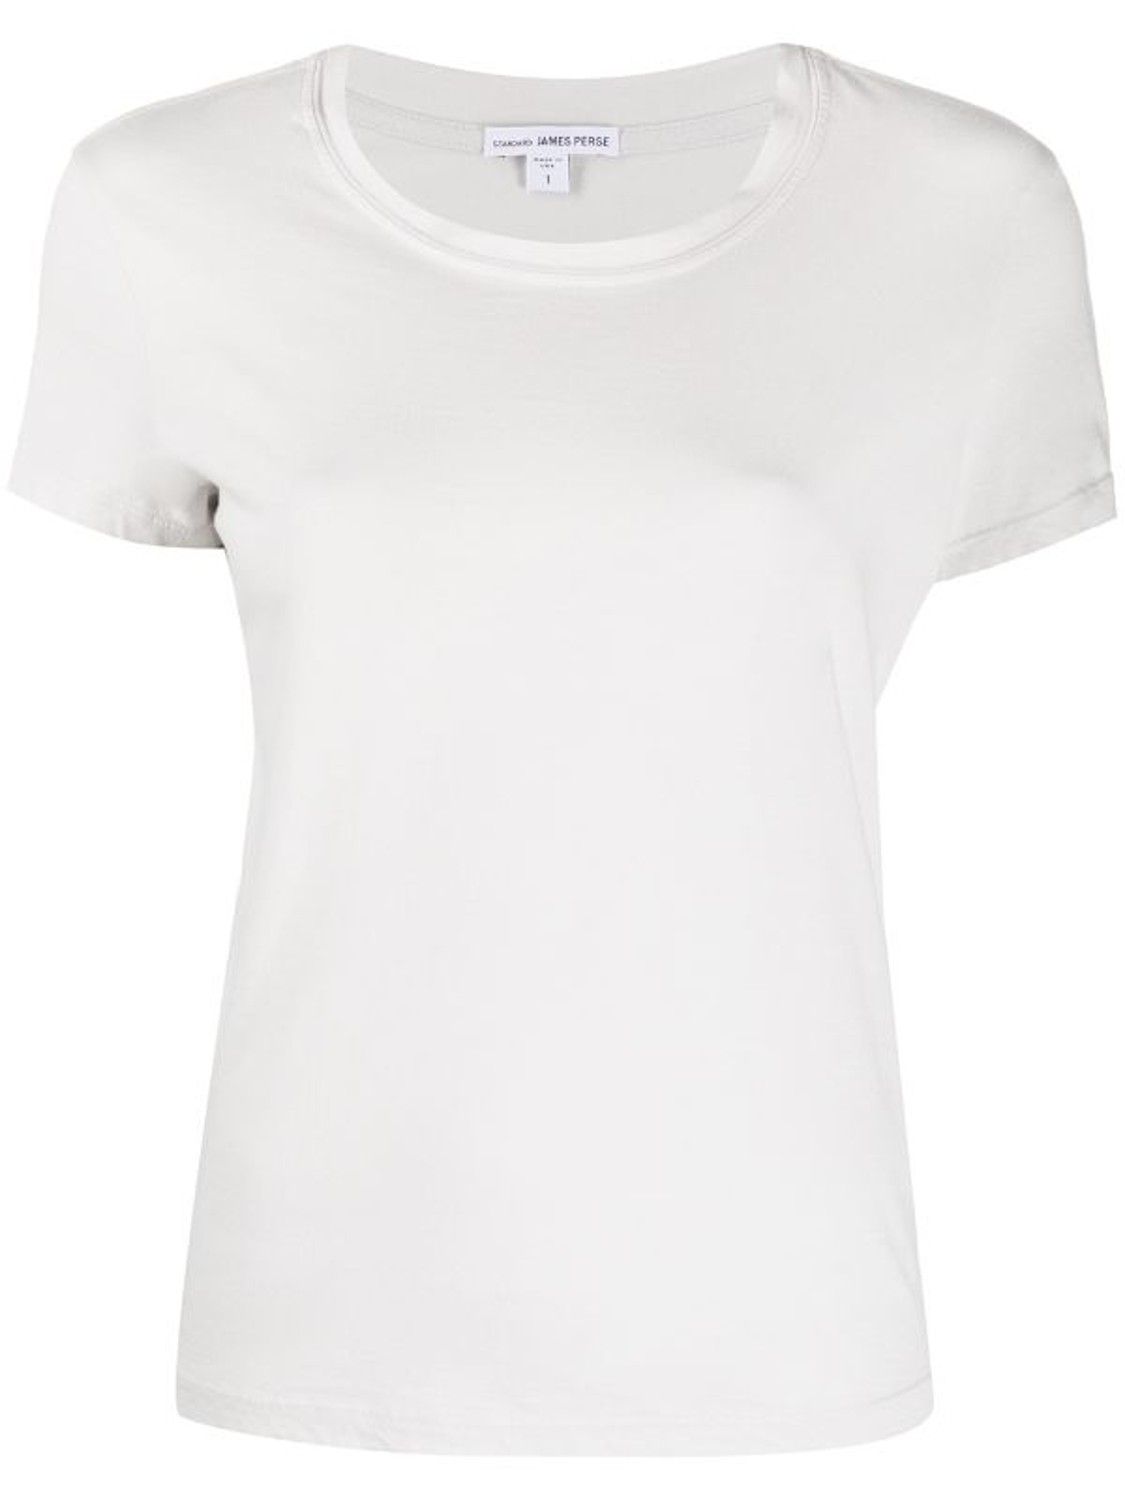 shop James Perse  T-shirts: T-shirts James Perse, manica corta, girocollo, cotone compatto, modello scatolina.

Composizione: 100% cotone. number 1823